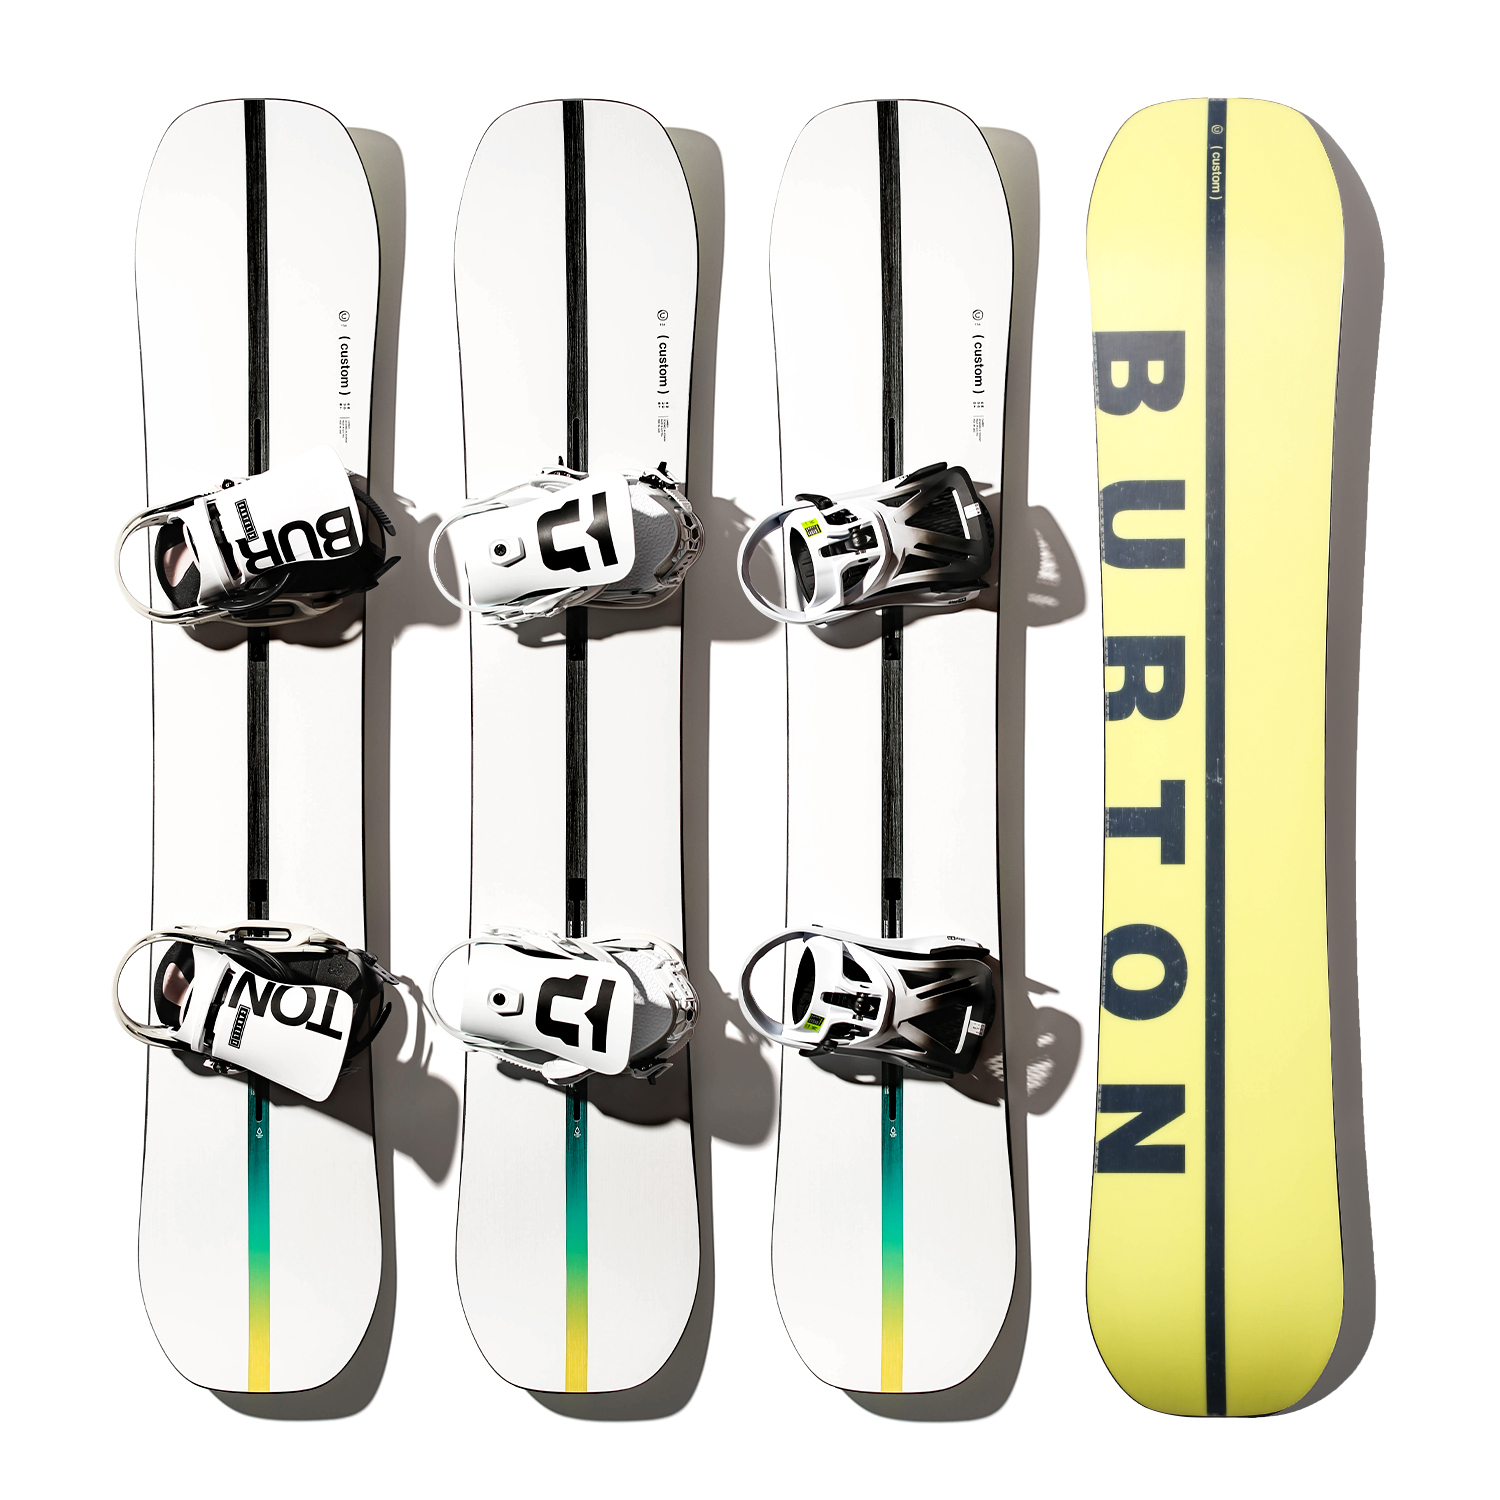 傲天极限2122伯顿BURTON男款滑雪板Custom单板滑雪成人装备– 四格的滑雪